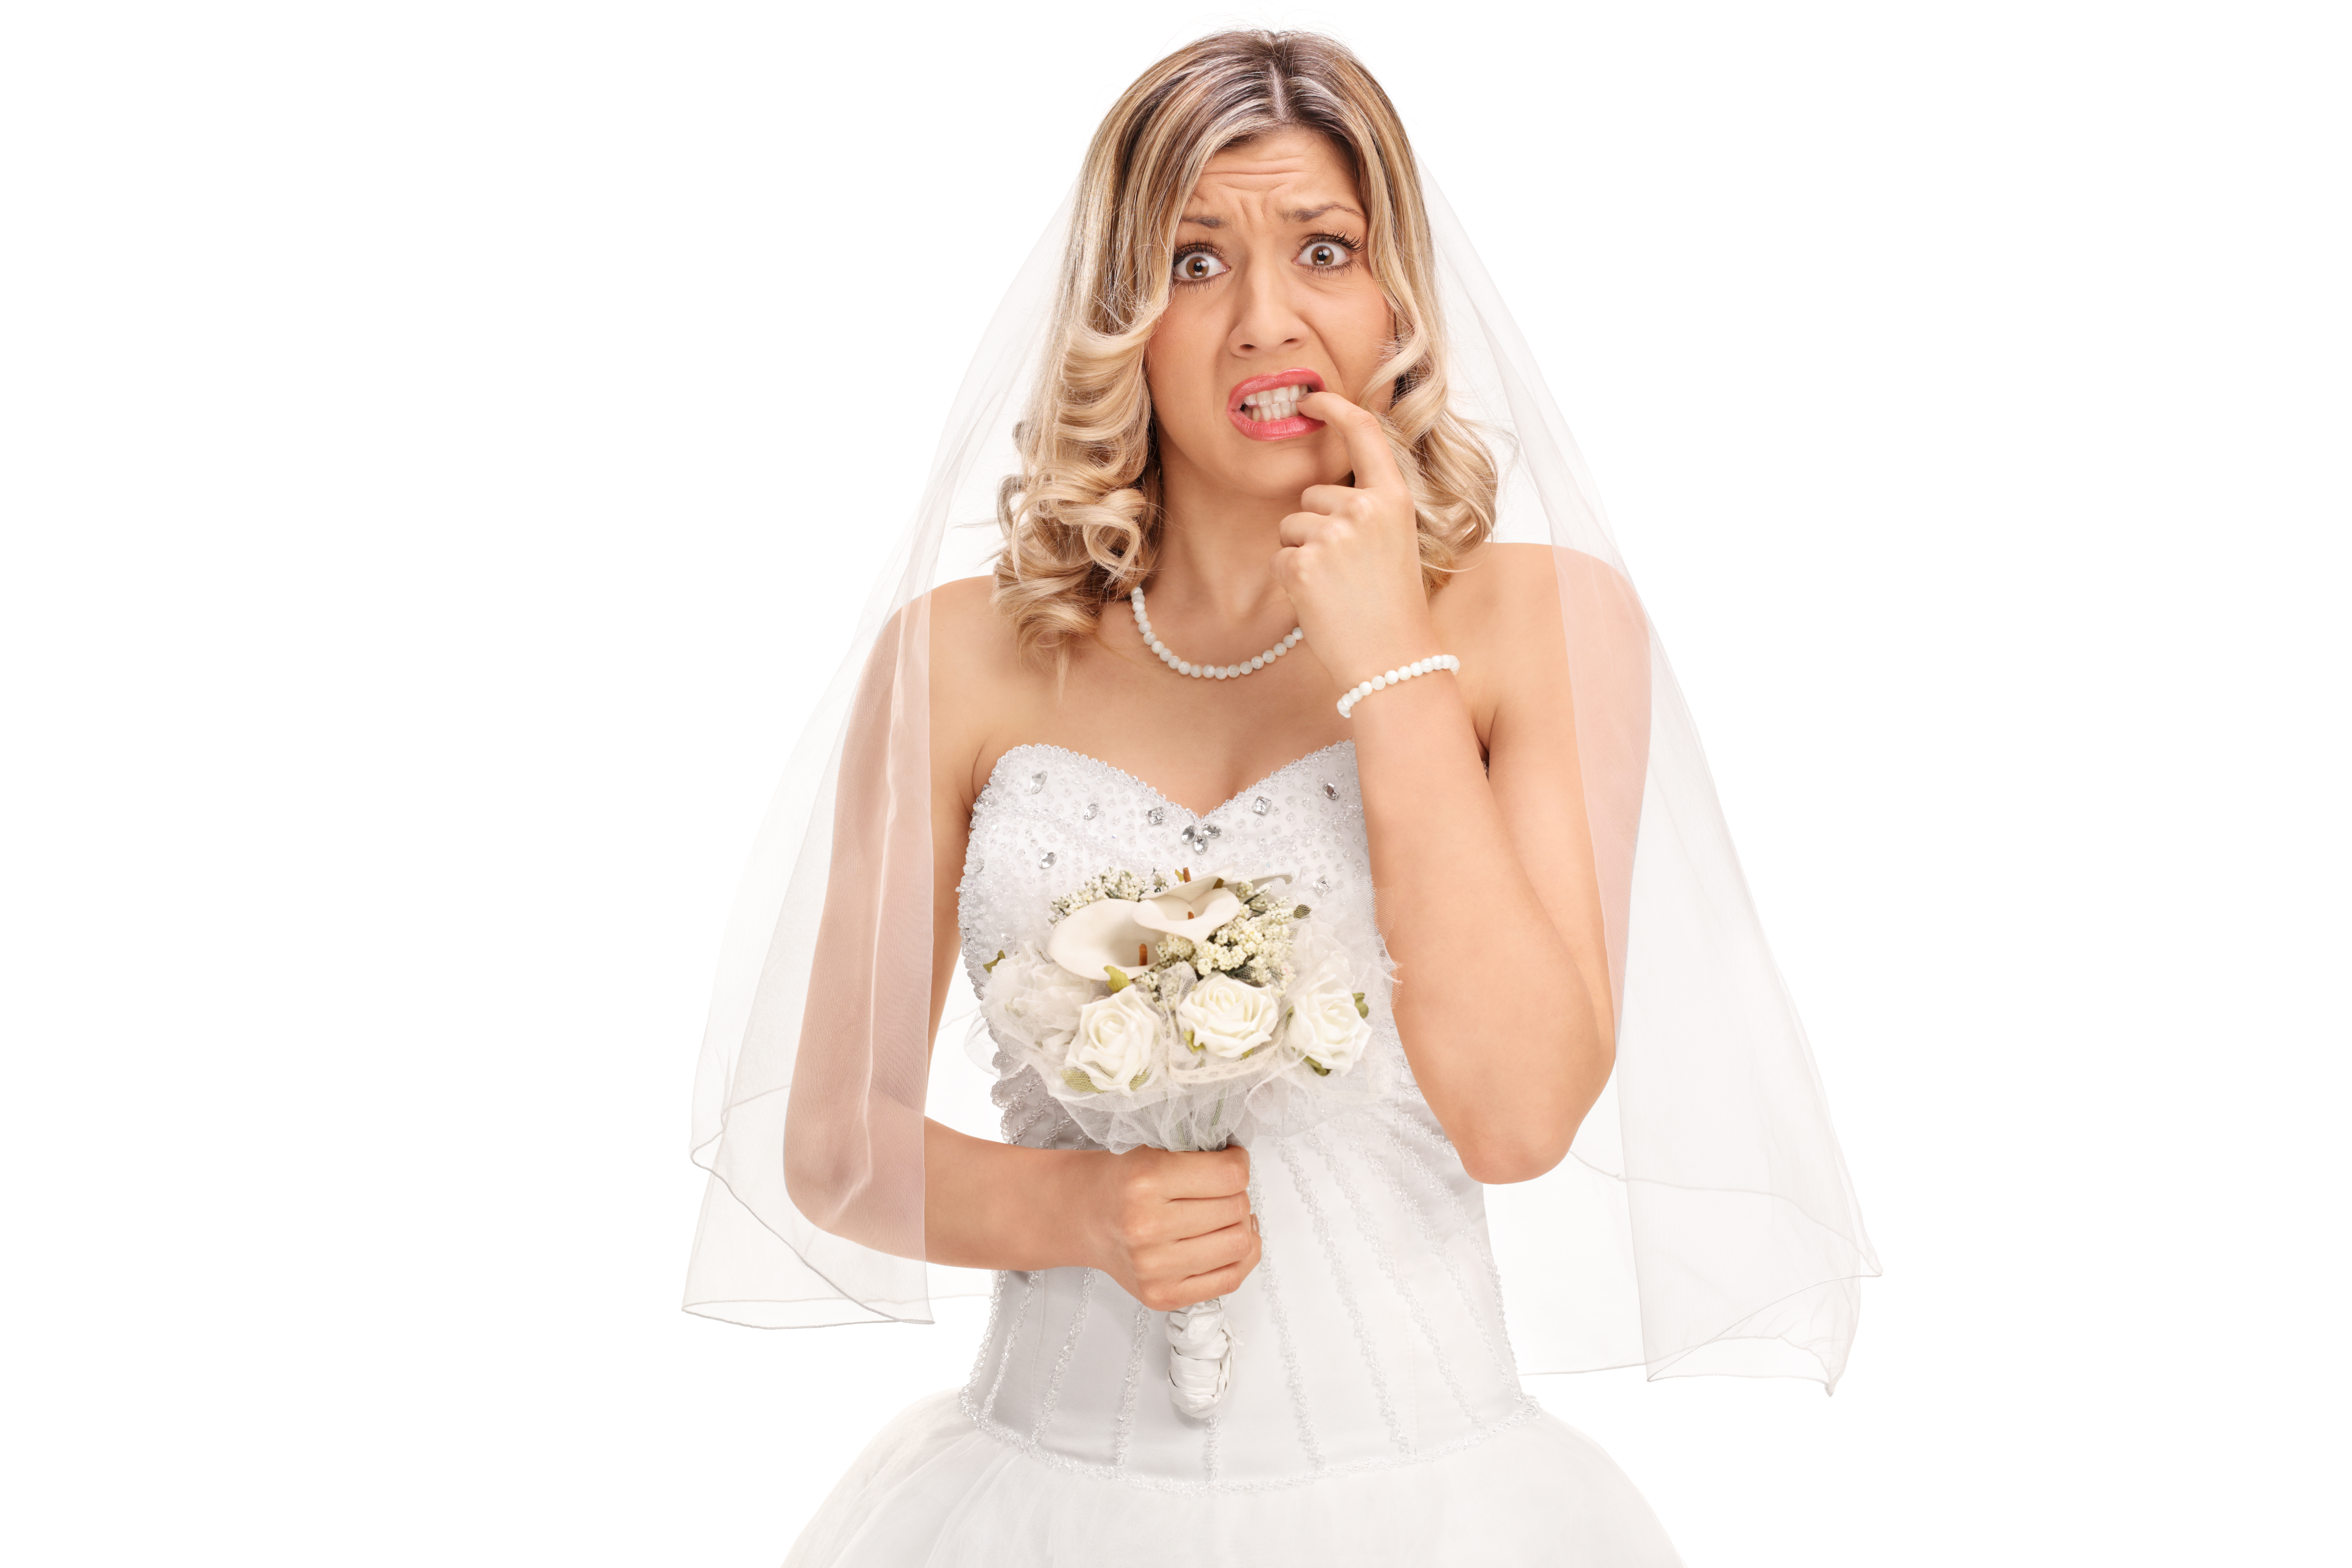 Eine nervöse junge Braut, die an ihren Nägeln kaut | Quelle: Shutterstock